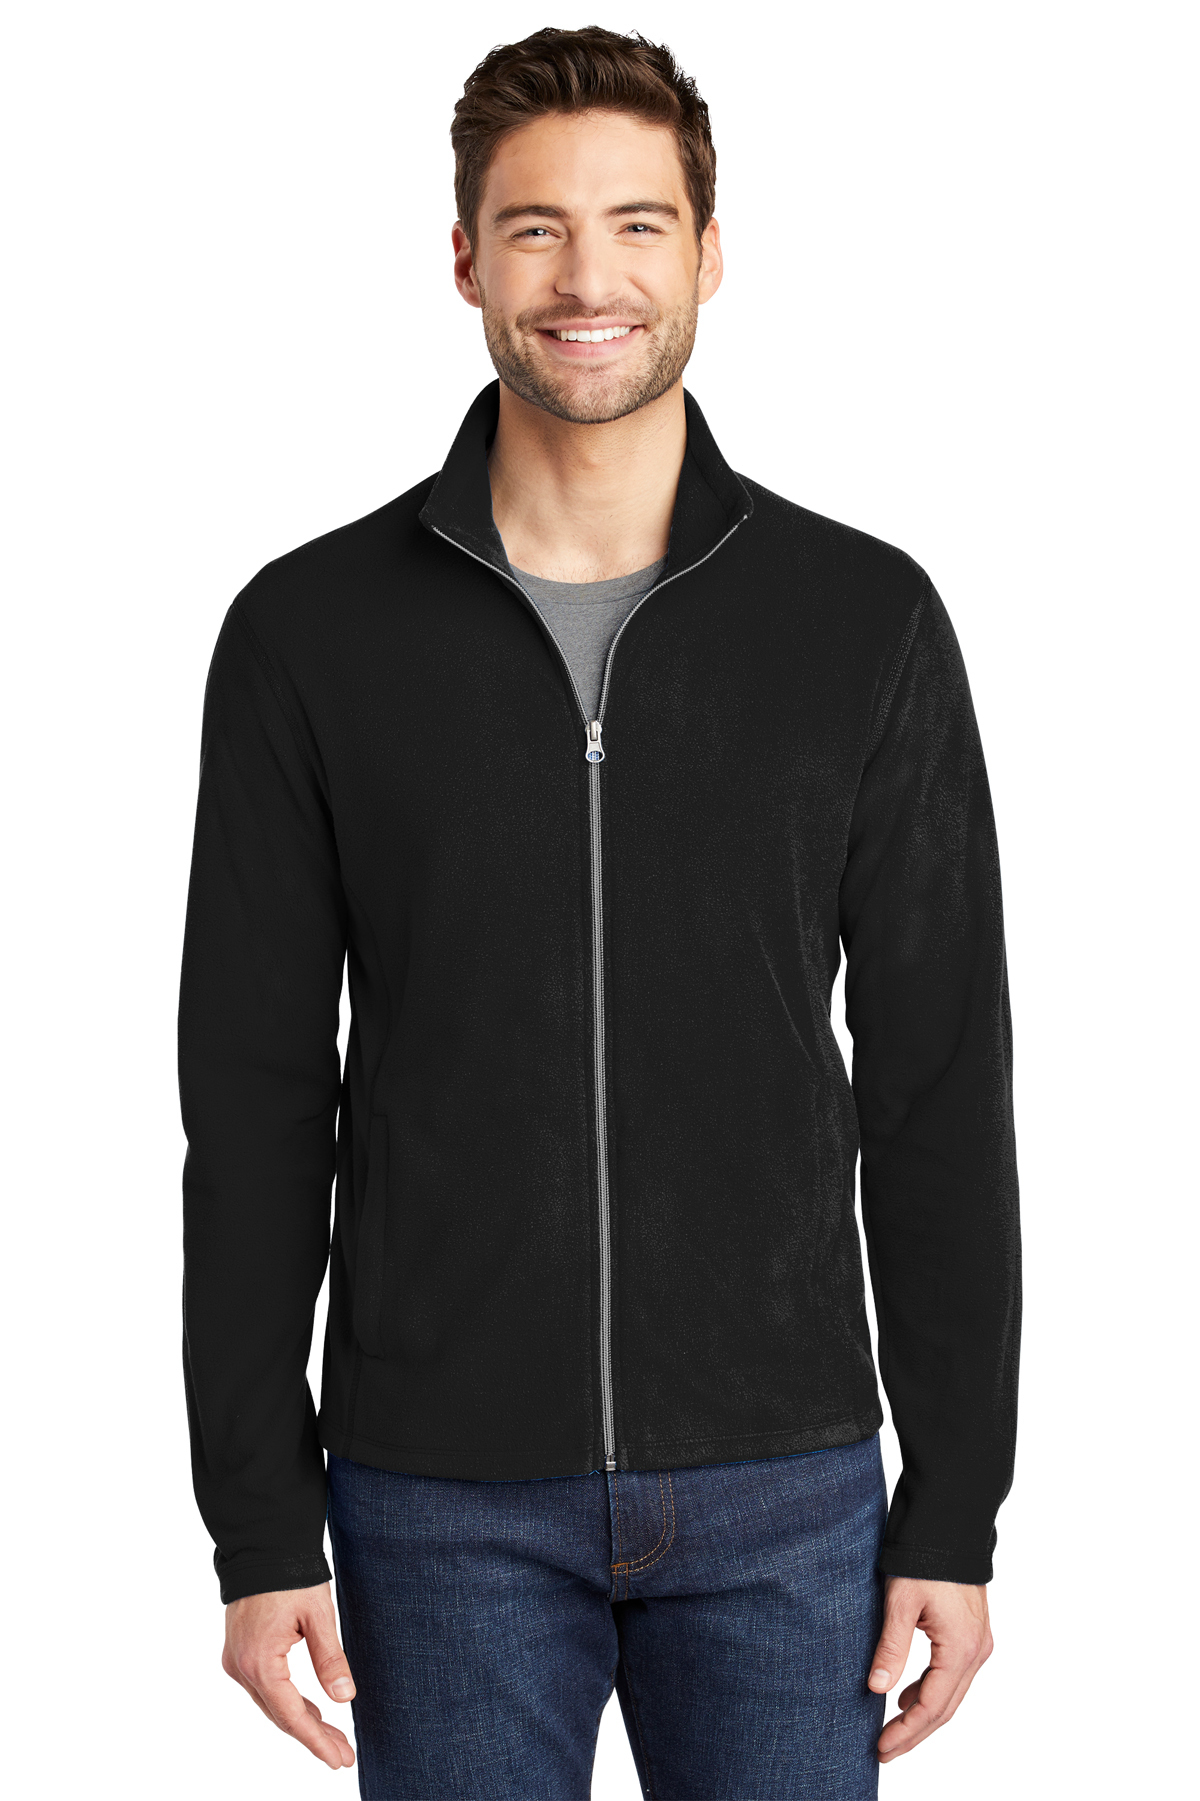 Men’s Full-Zip Micro-Fleece Jacket Port Authority® F223 | Central Uniforms